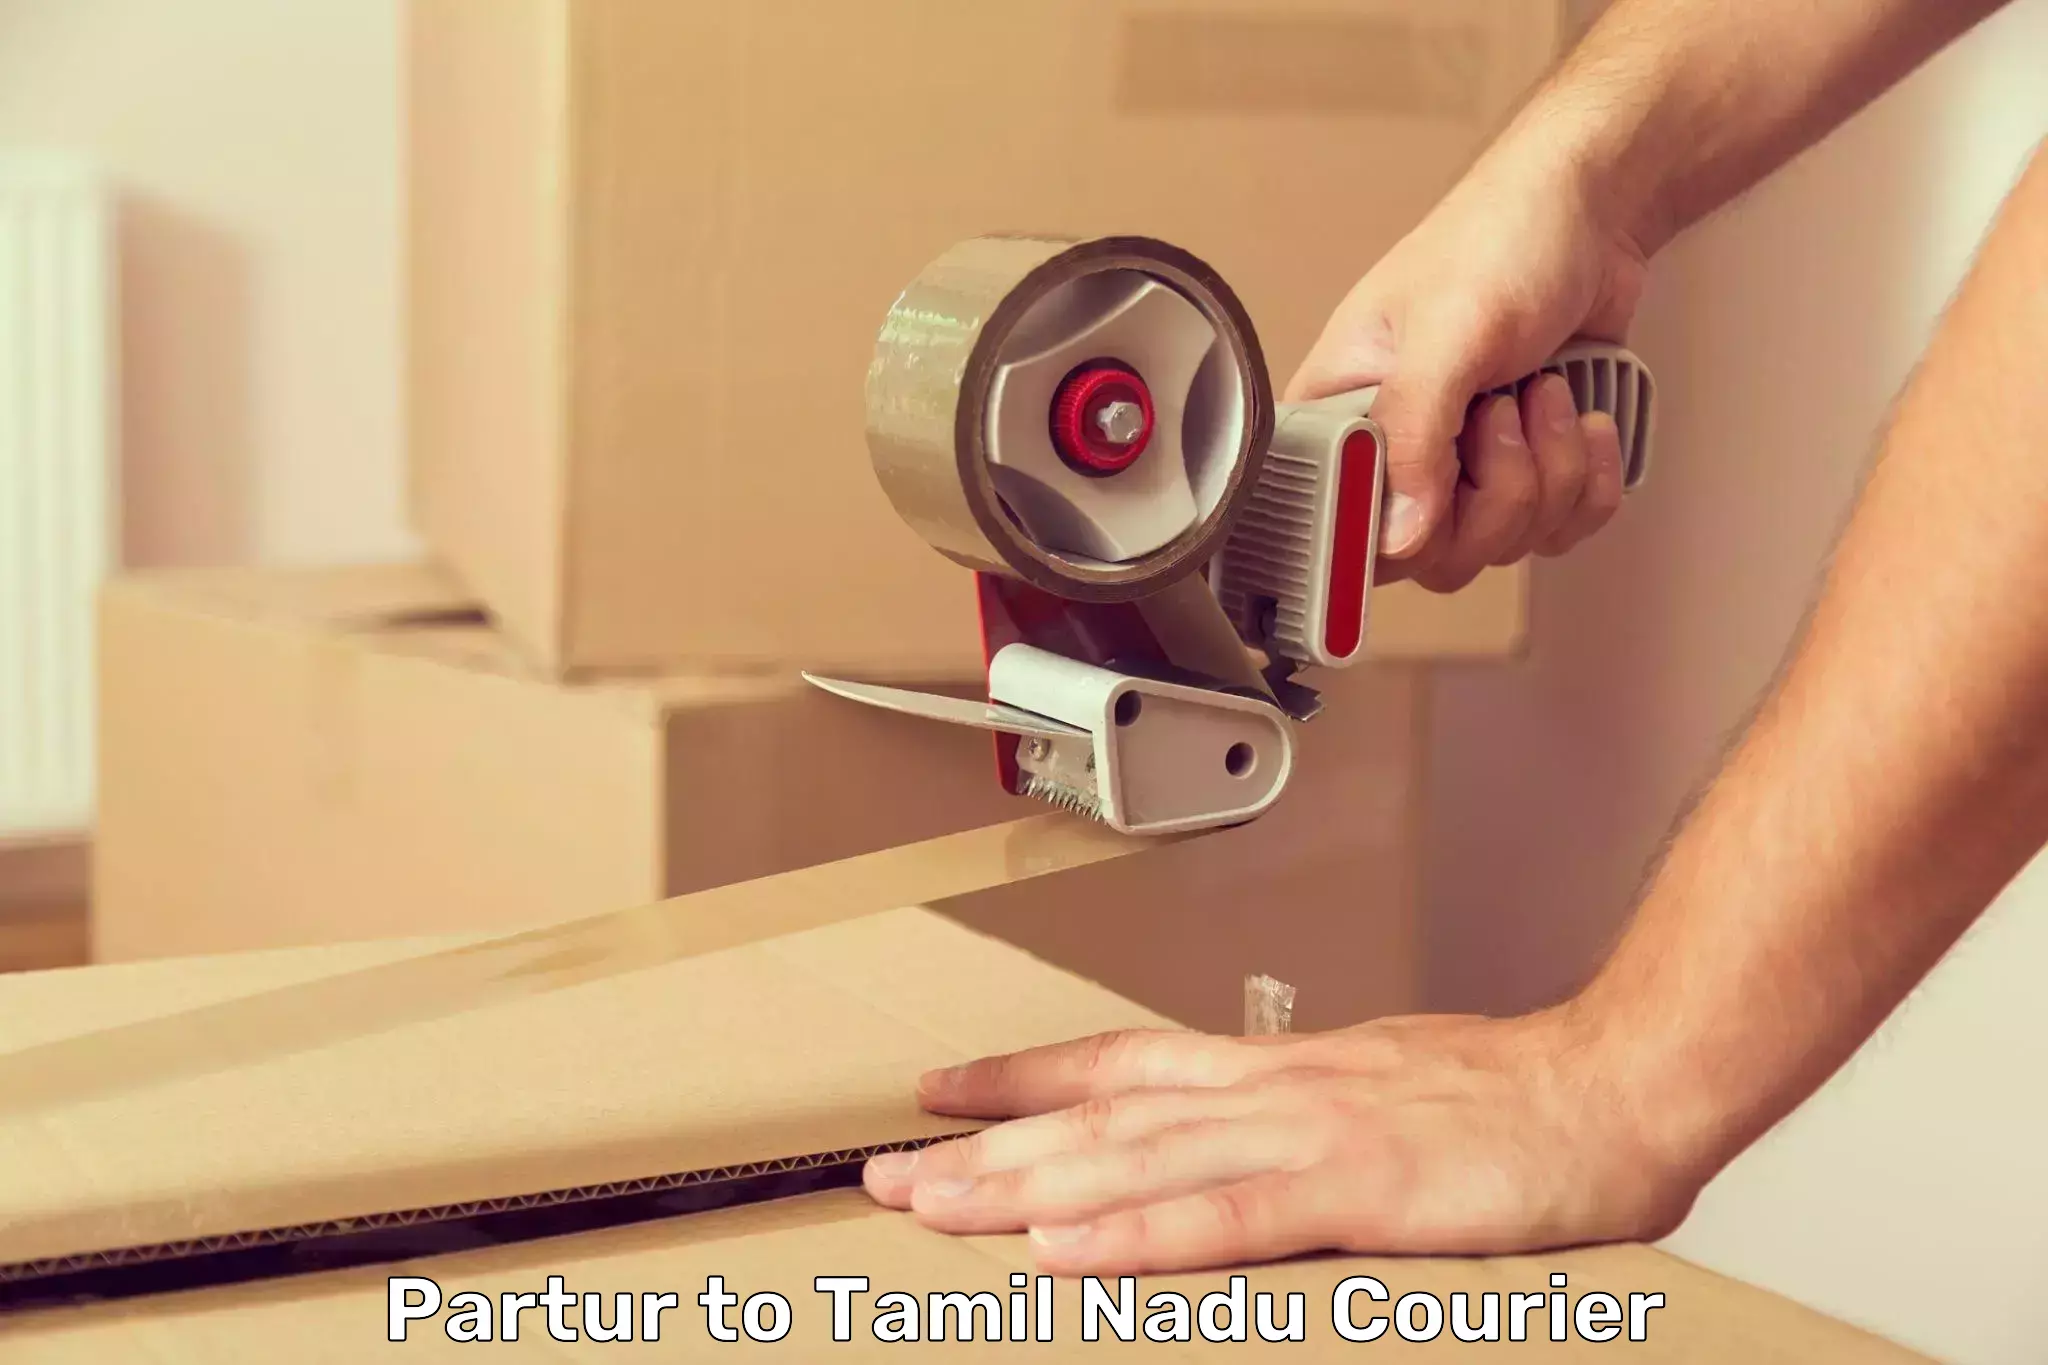 User-friendly courier app Partur to Tirupur